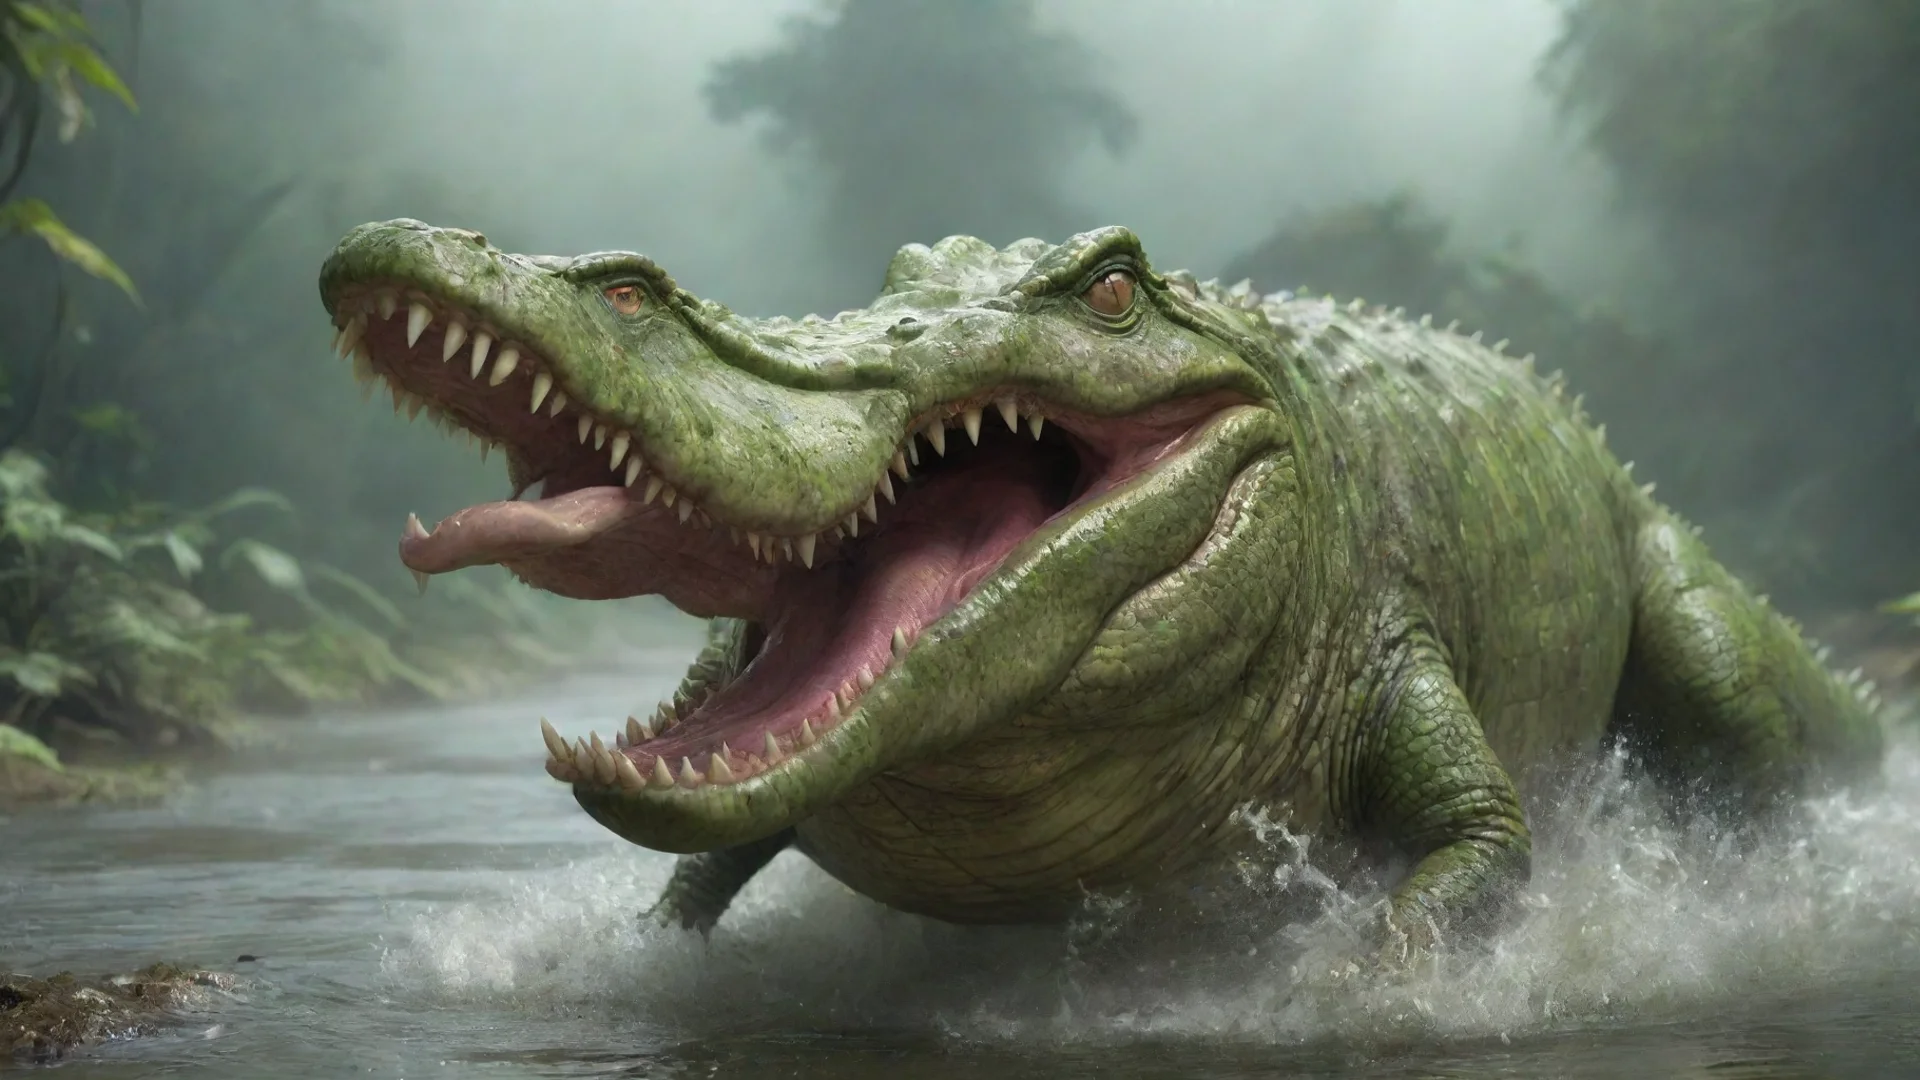 amazing alien crocodile race awesome portrait 2 wide